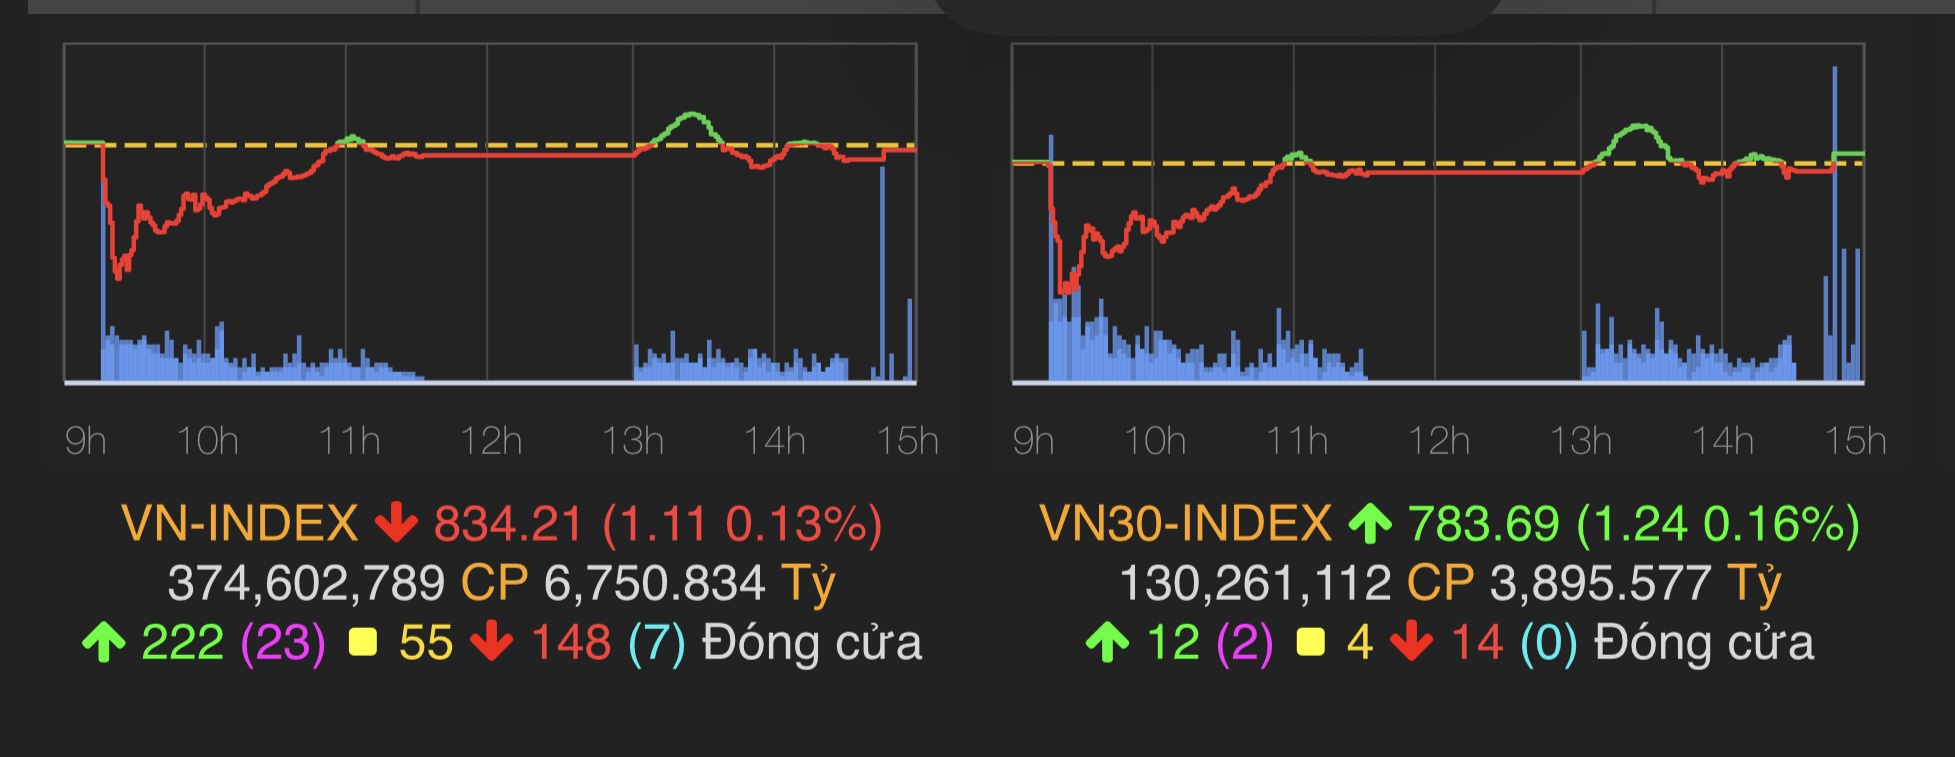 VN-Index giảm nhẹ 1,11 điểm (0,13%) xuống 834,21 điểm.